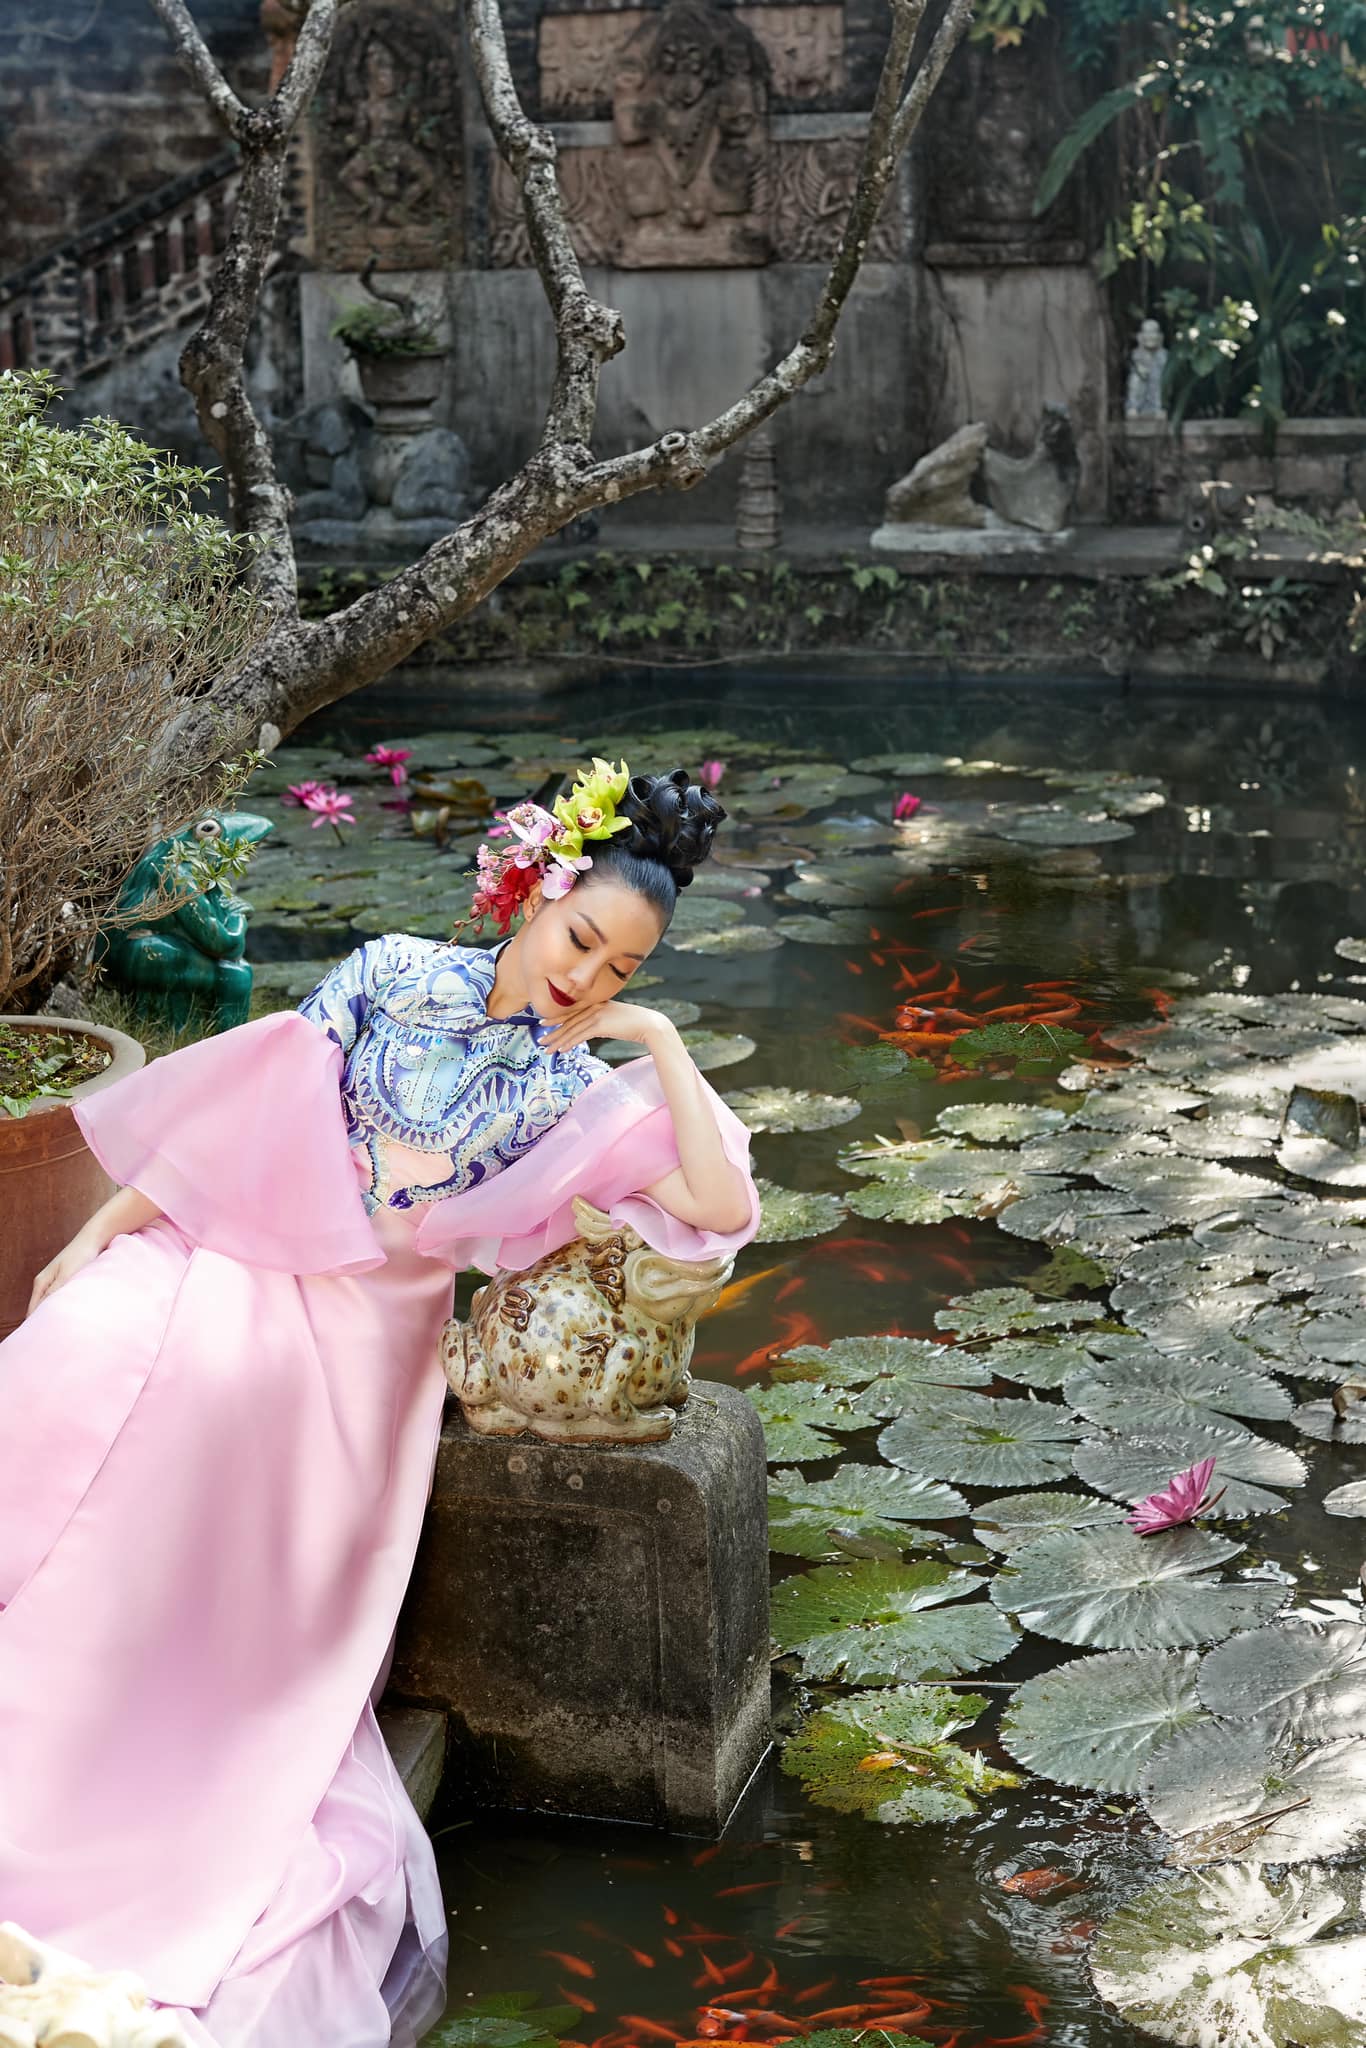 Bộ áo dài hồng phối họa tiết xanh này được chính Linh Nga lựa chọn vì nó có sự tương đồng nhất định với phong cách thời trang nữ tính của cô